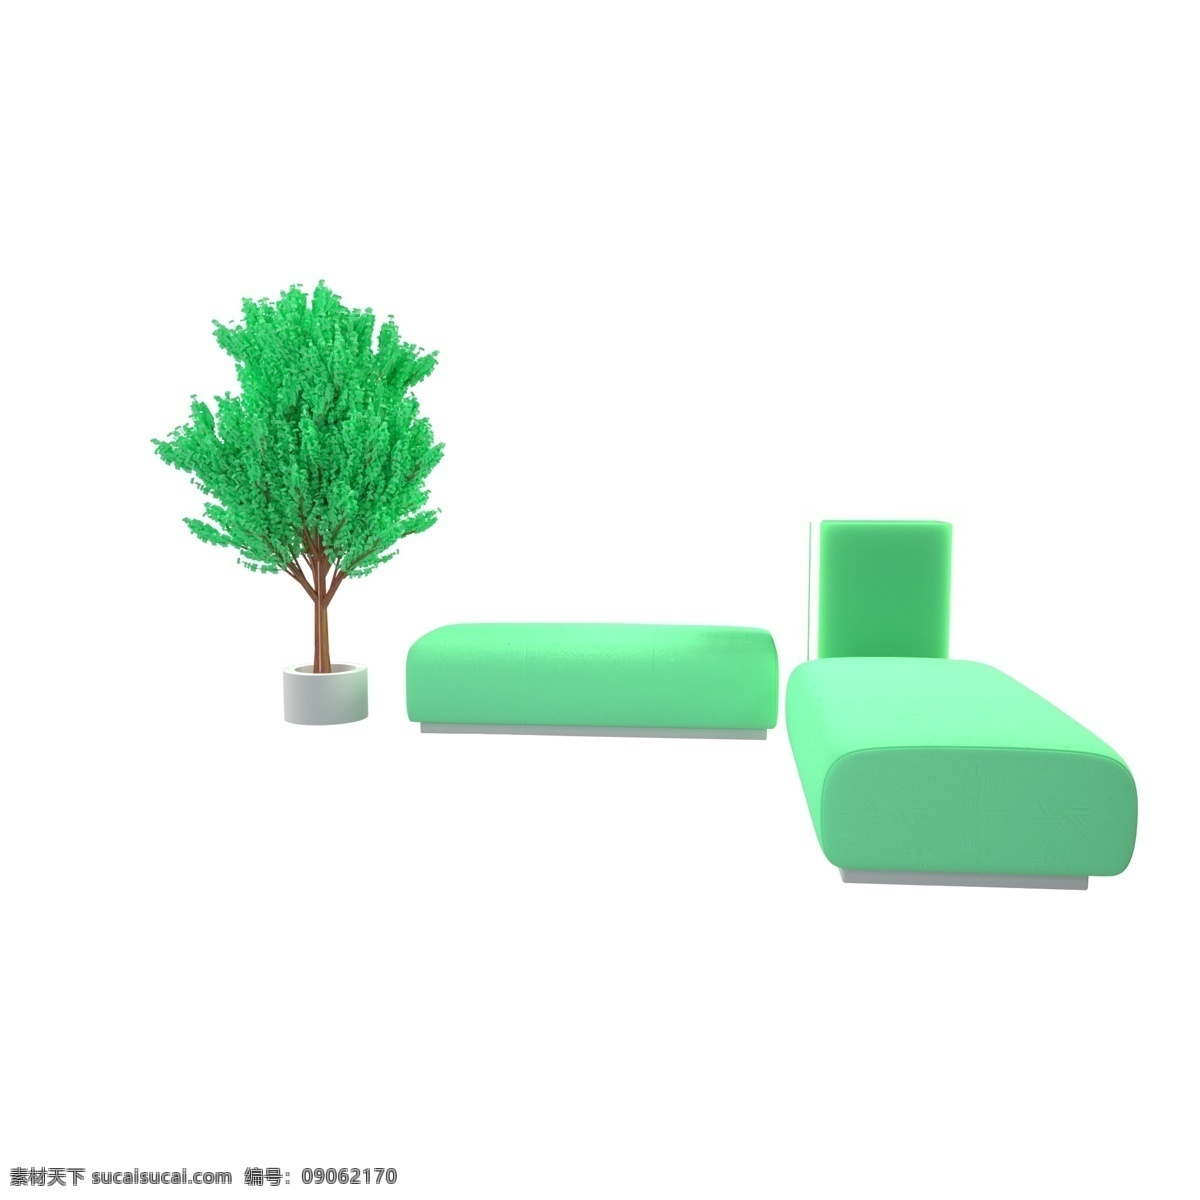 绿色 家装 沙发 装饰 c4d 3d 写实 家居 家具 家居生活馆 家装节 植物 家装节装修 活泼 树木